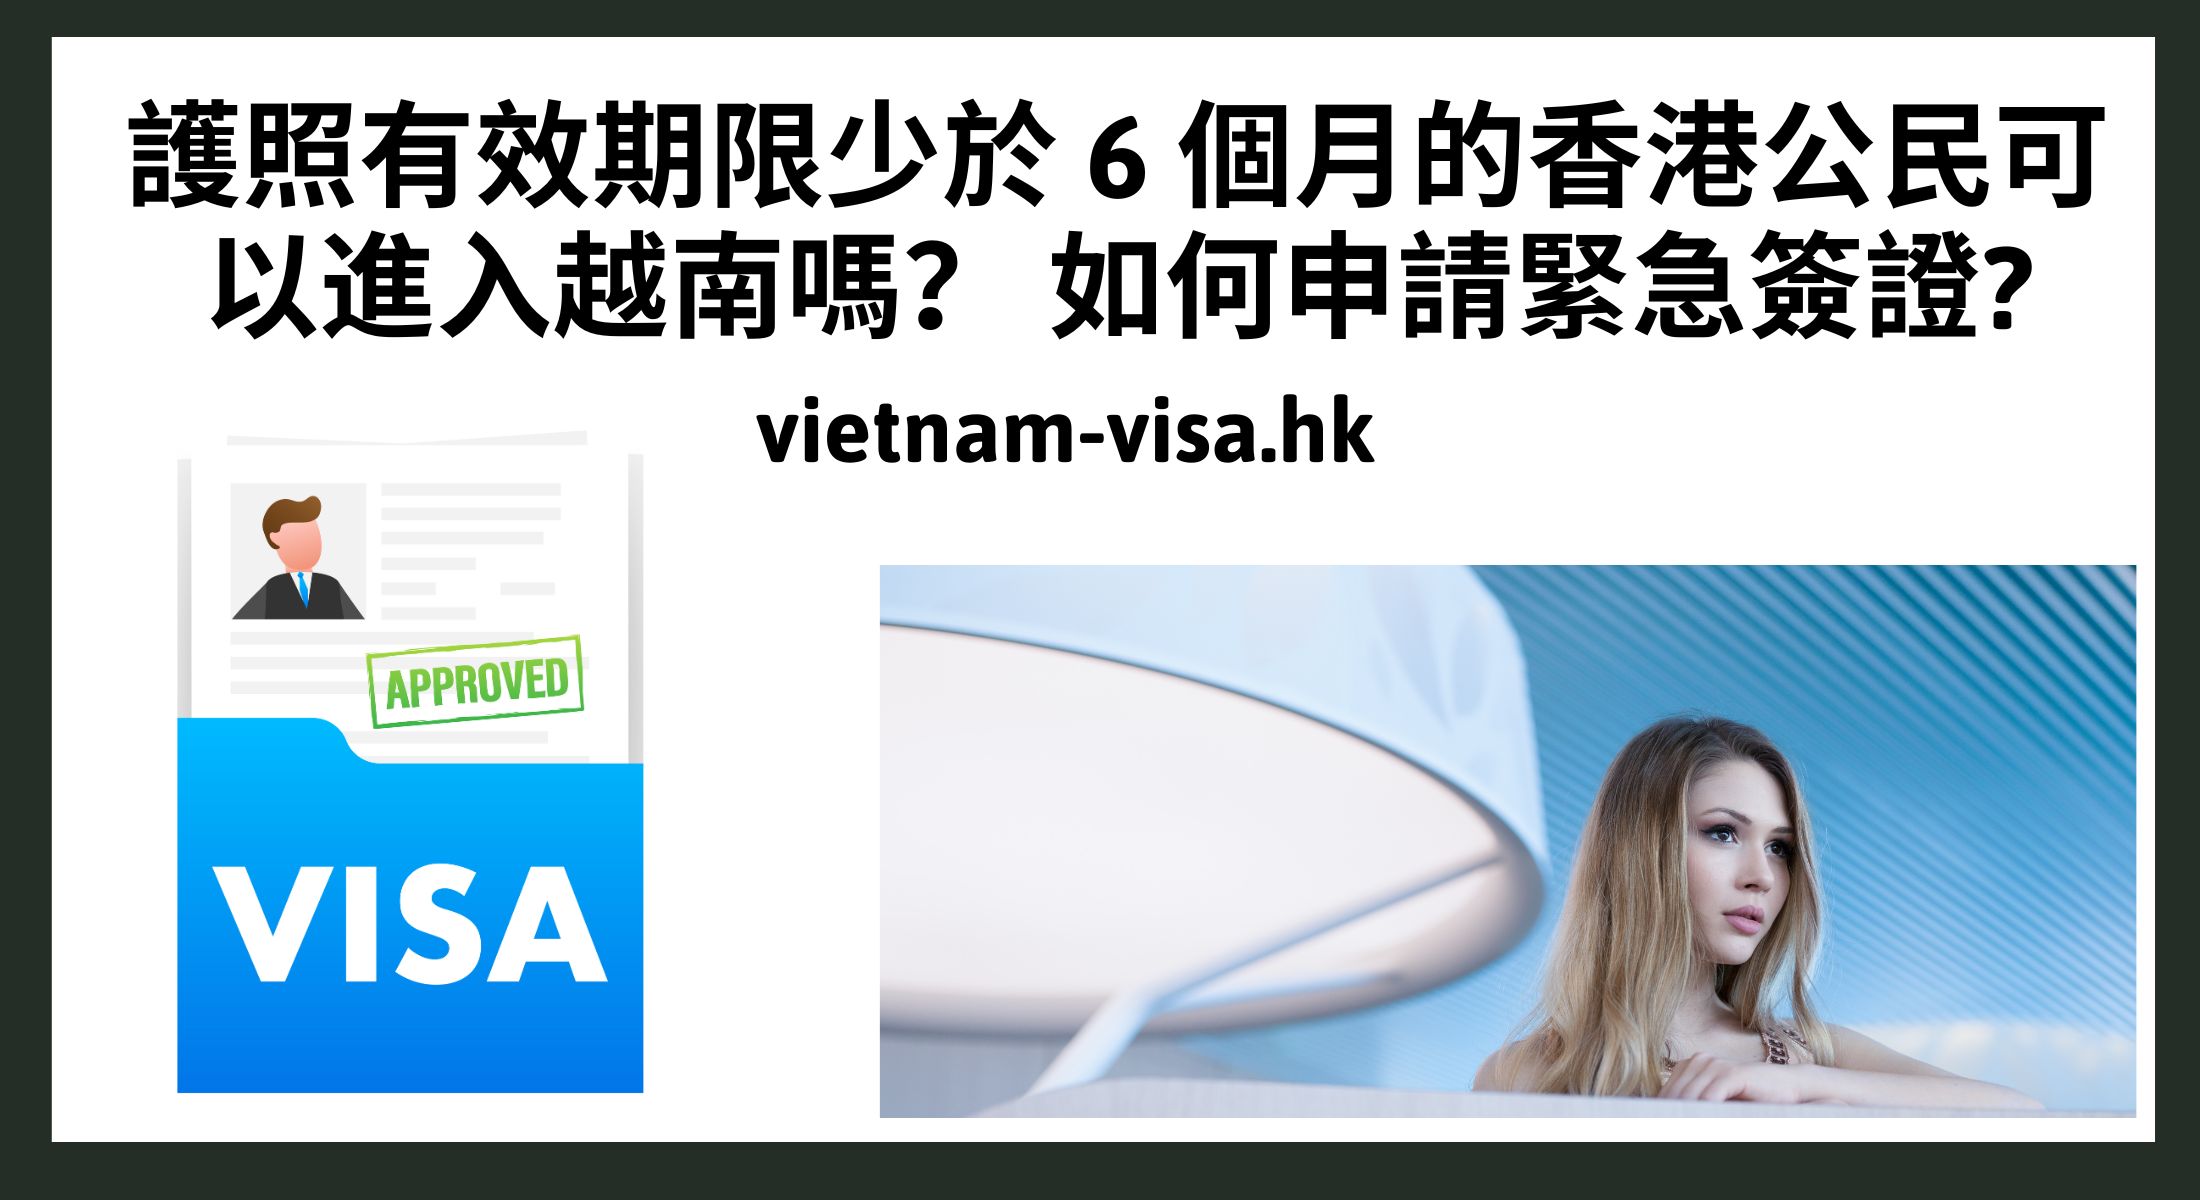 護照有效期限少於 6 個月的香港公民可以進入越南嗎？ 如何申請緊急簽證?